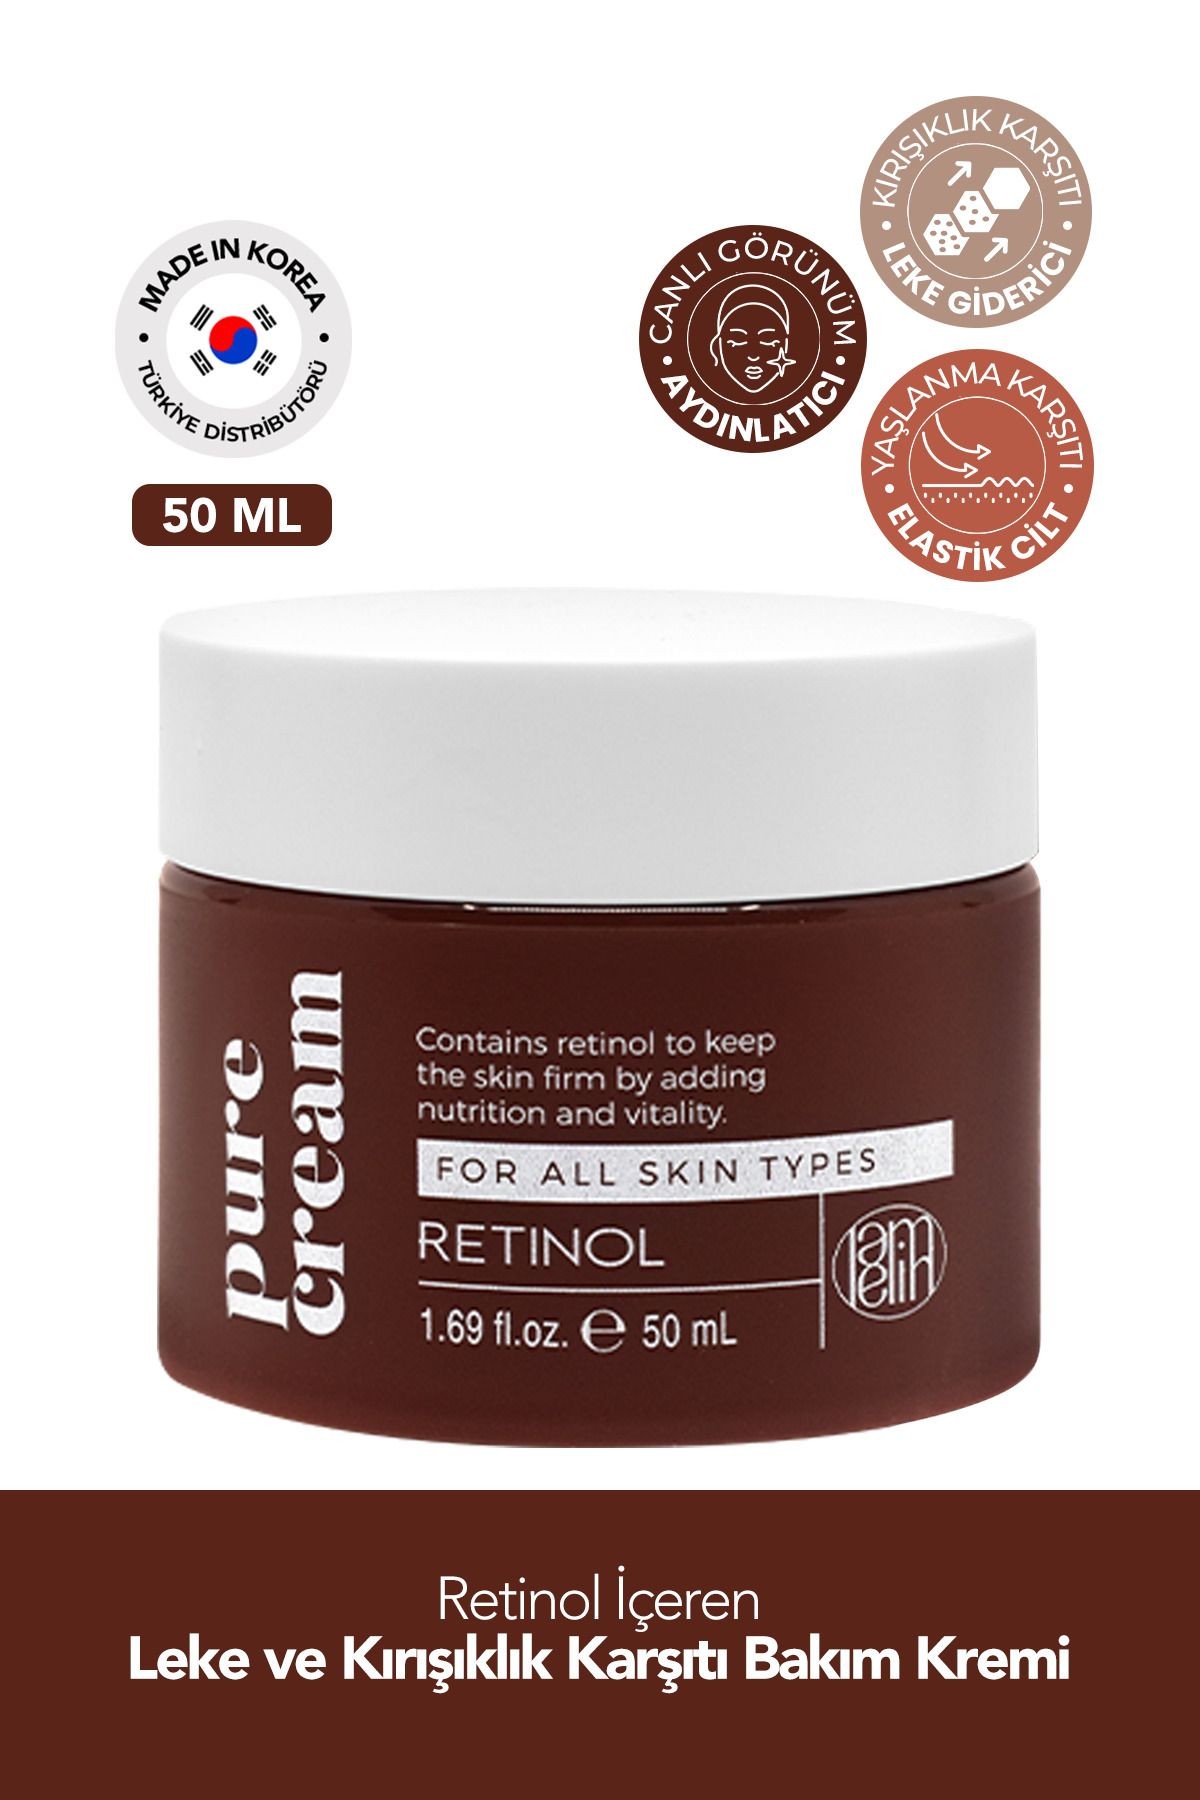 Retinol İçeren Leke ve Kırışıklık Karşıtı Yüz Bakım Kremi Lamelin Retinol Pure Cream 50 ml